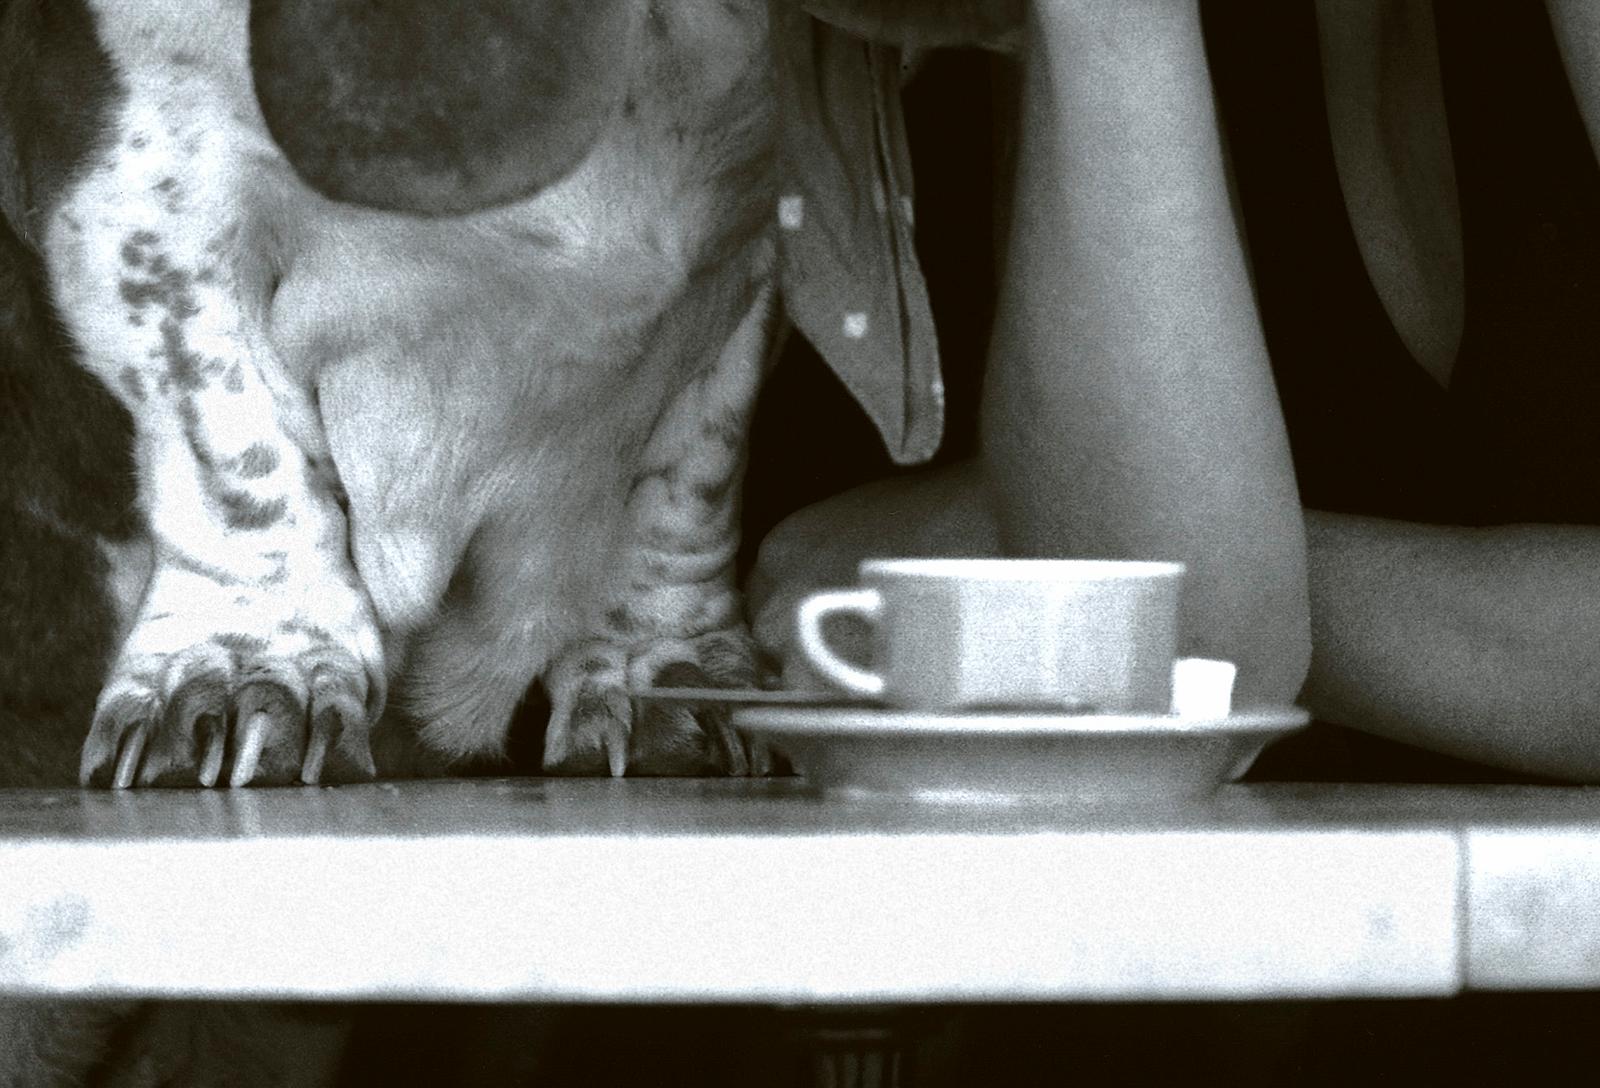 Banya - Impression de nature morte en édition limitée signée, photo en noir et blanc, animal chien - Contemporain Photograph par Ian Sanderson